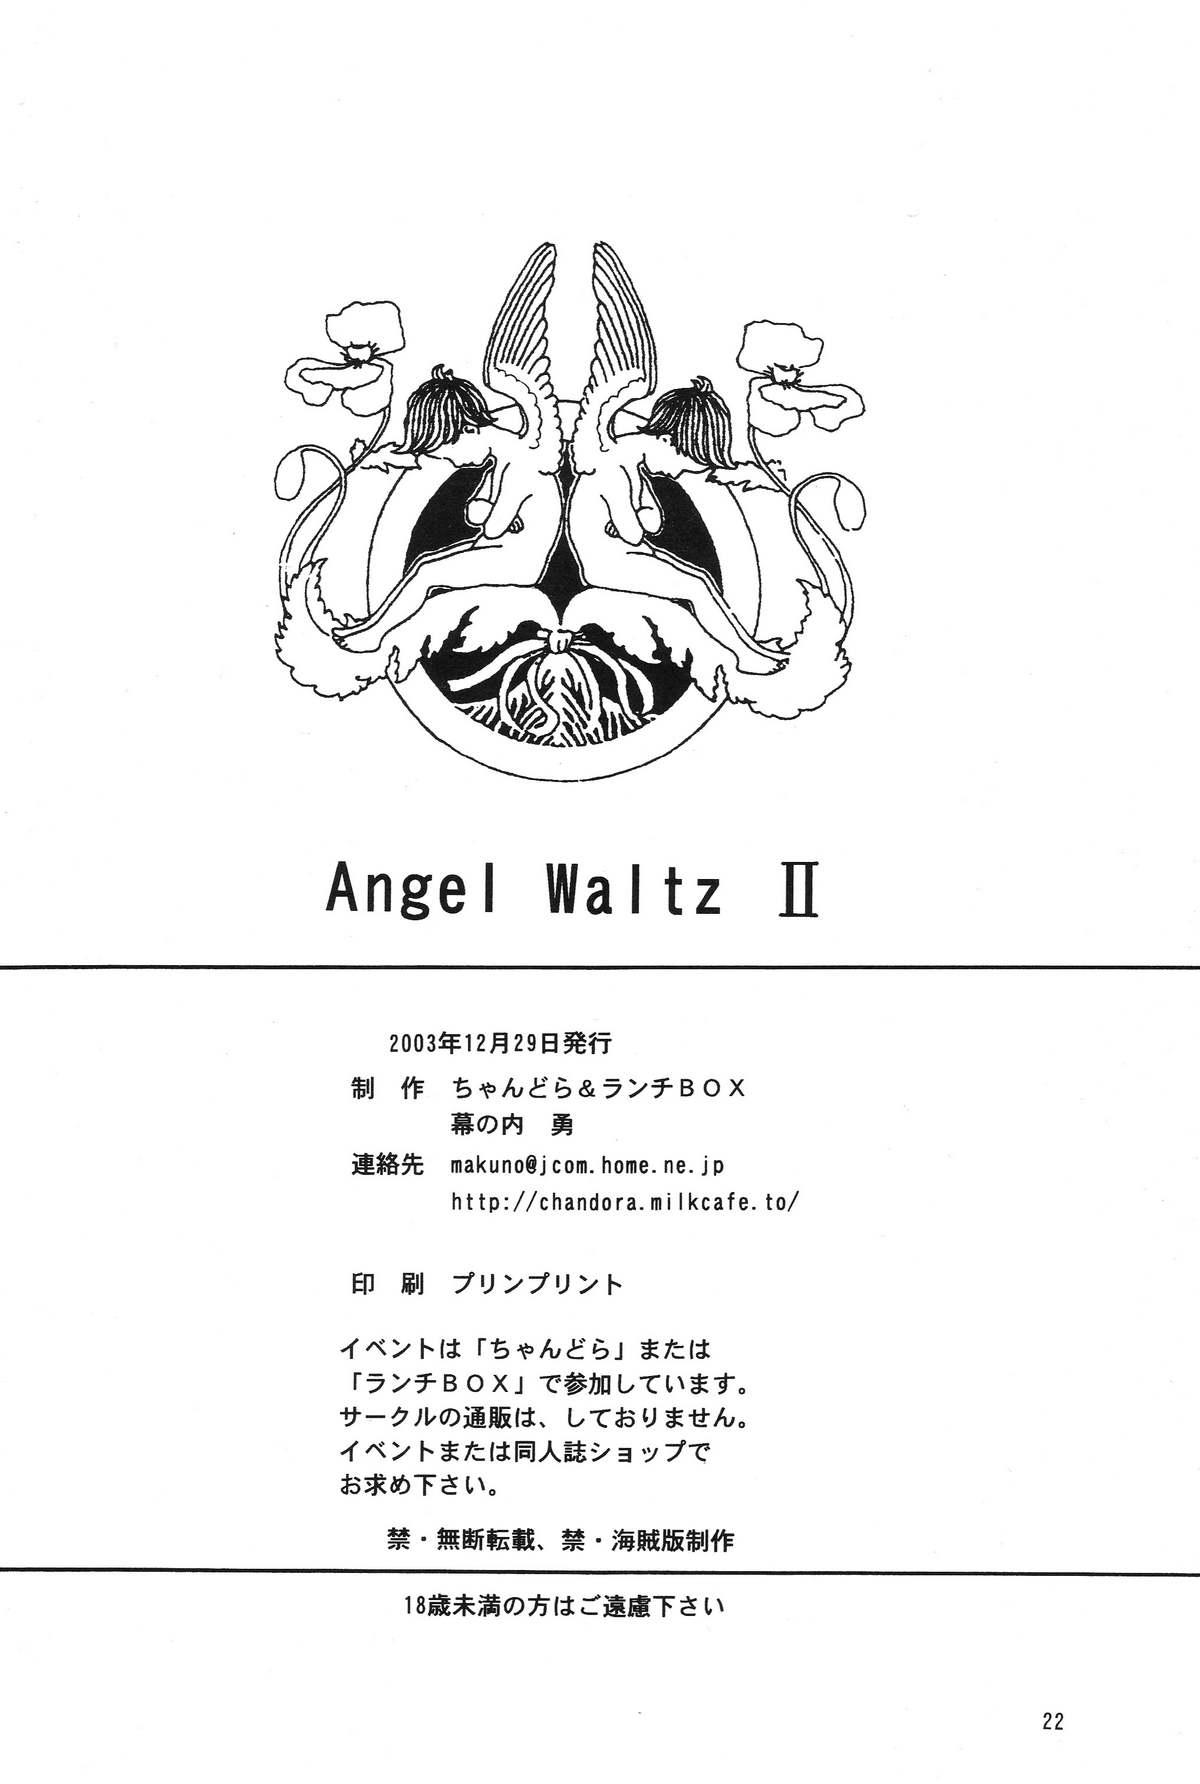 Lunch Box 60 - Angel Waltz 2 20